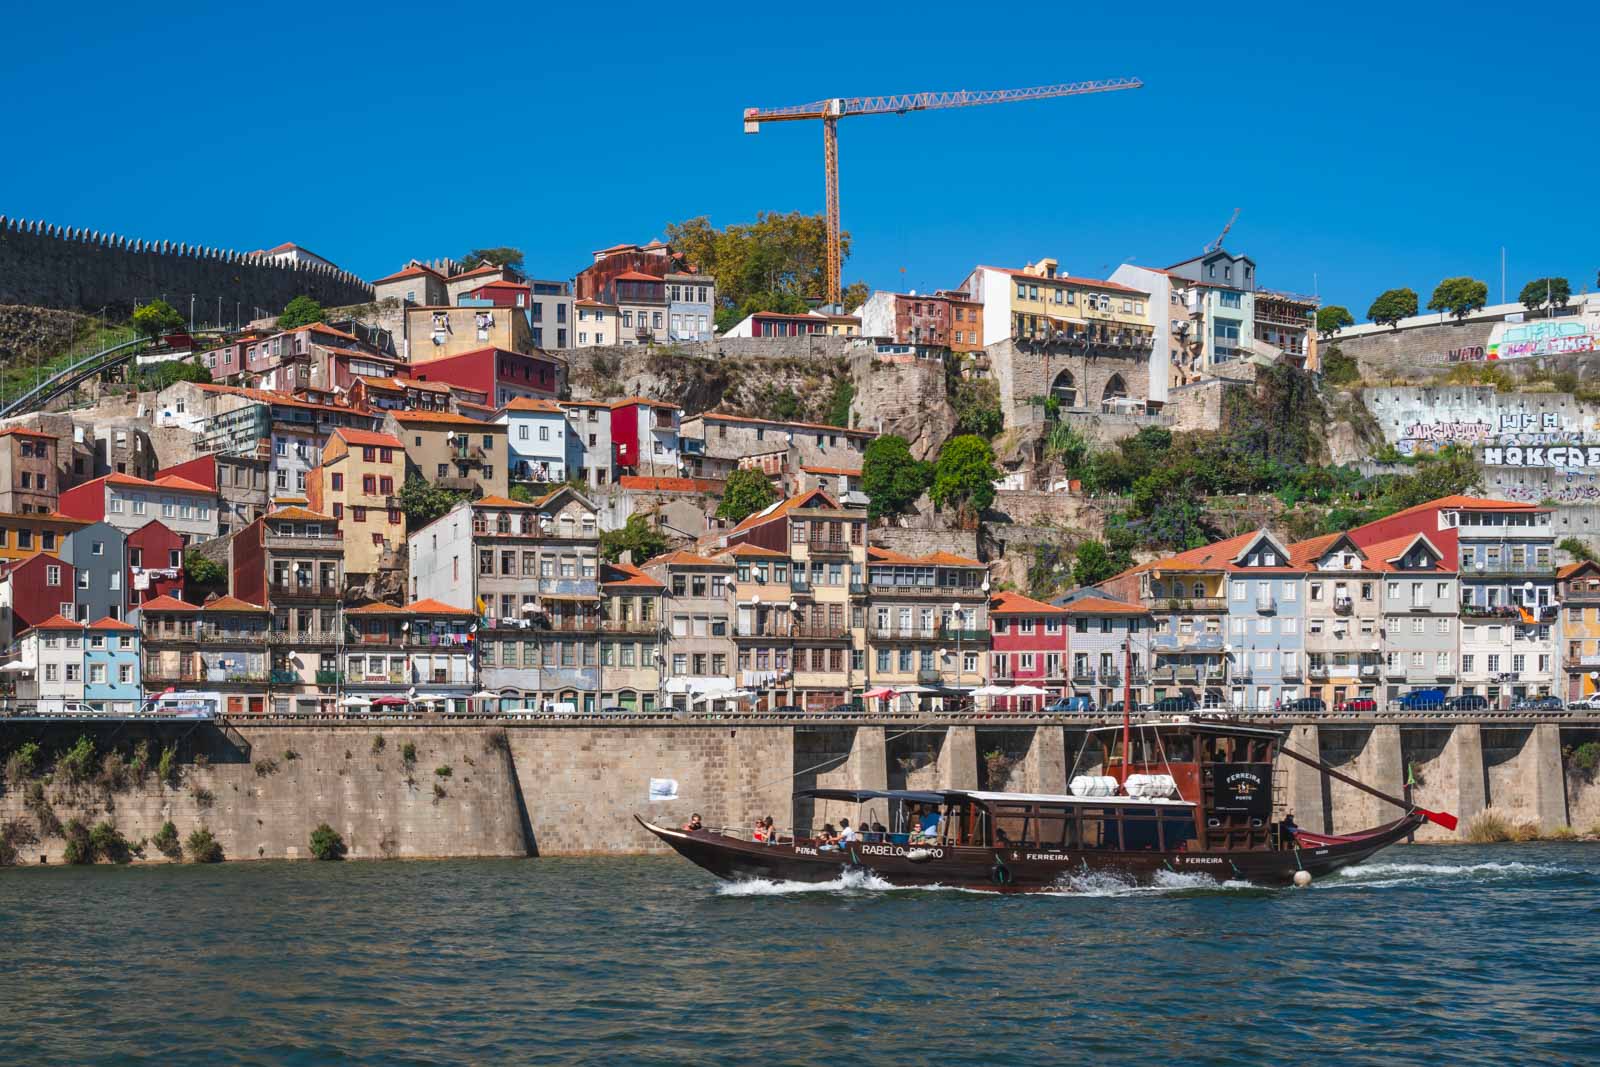 Where to Stay in Porto Bonfim